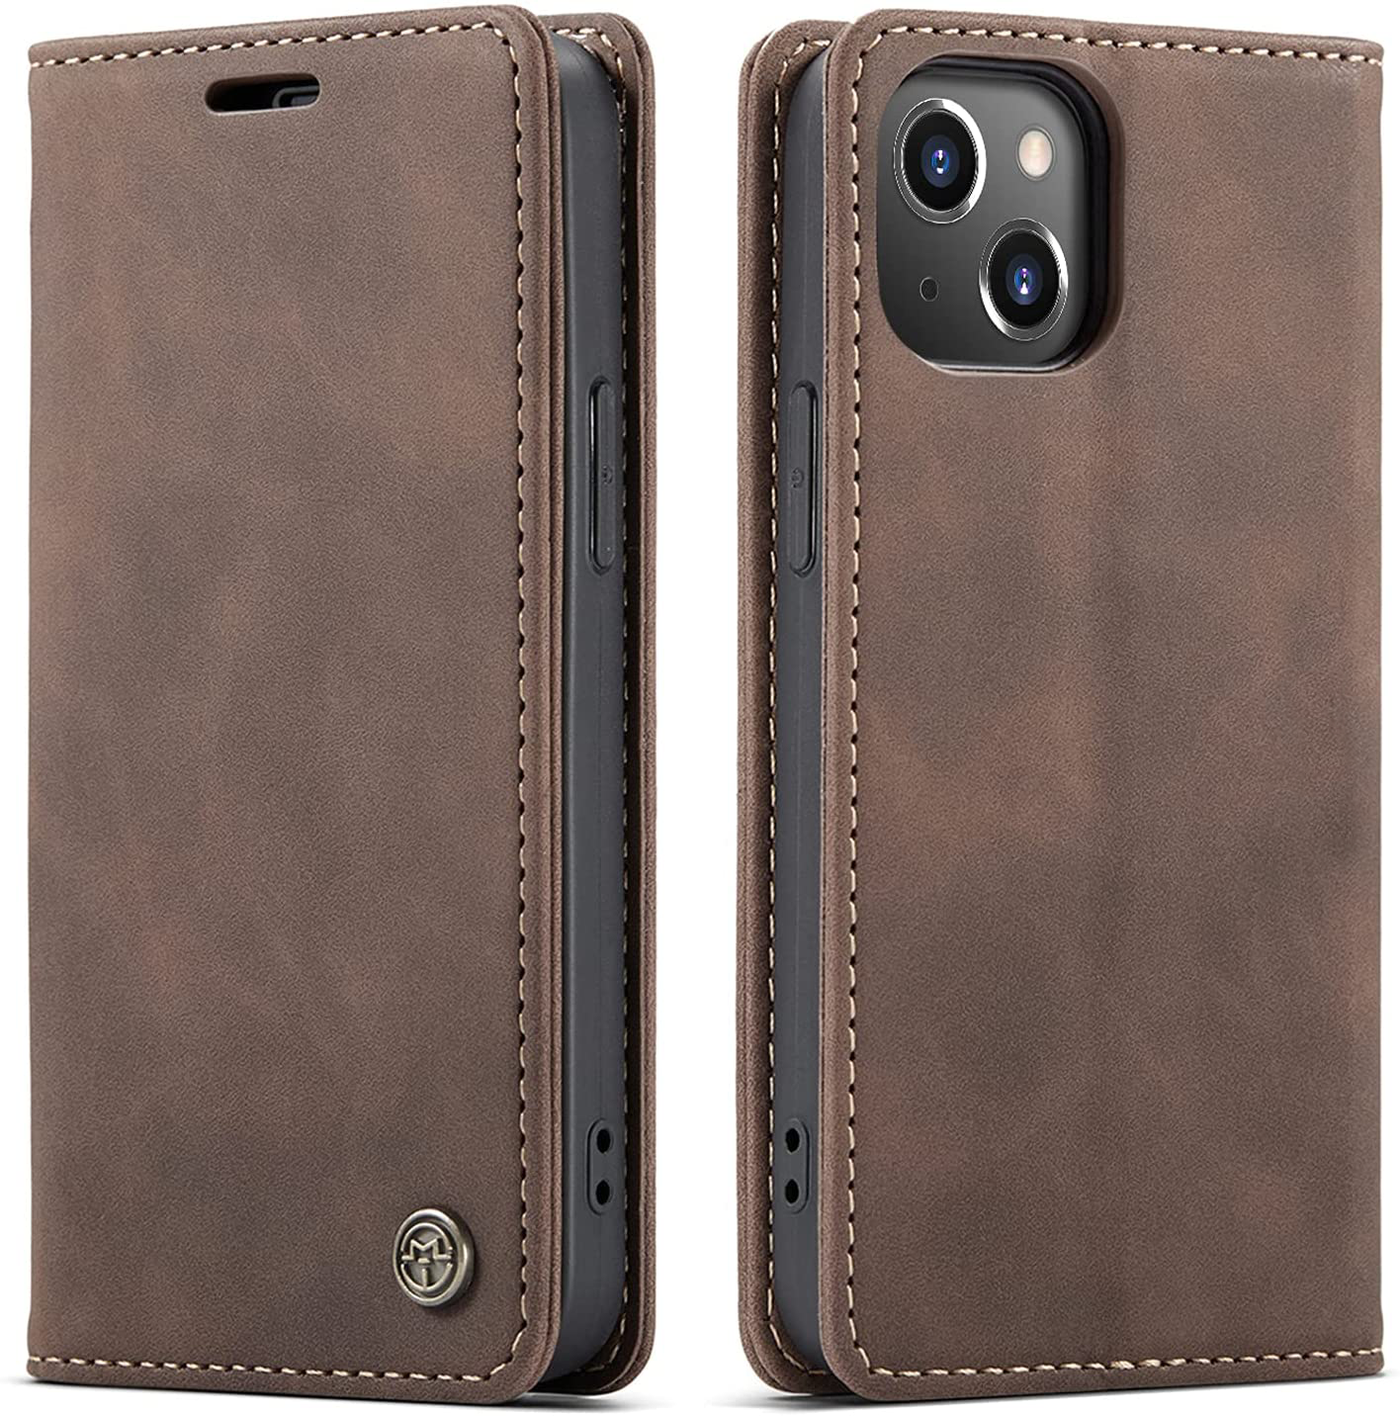 iPhone 13 mini high quality premium and unique designer leather case cover